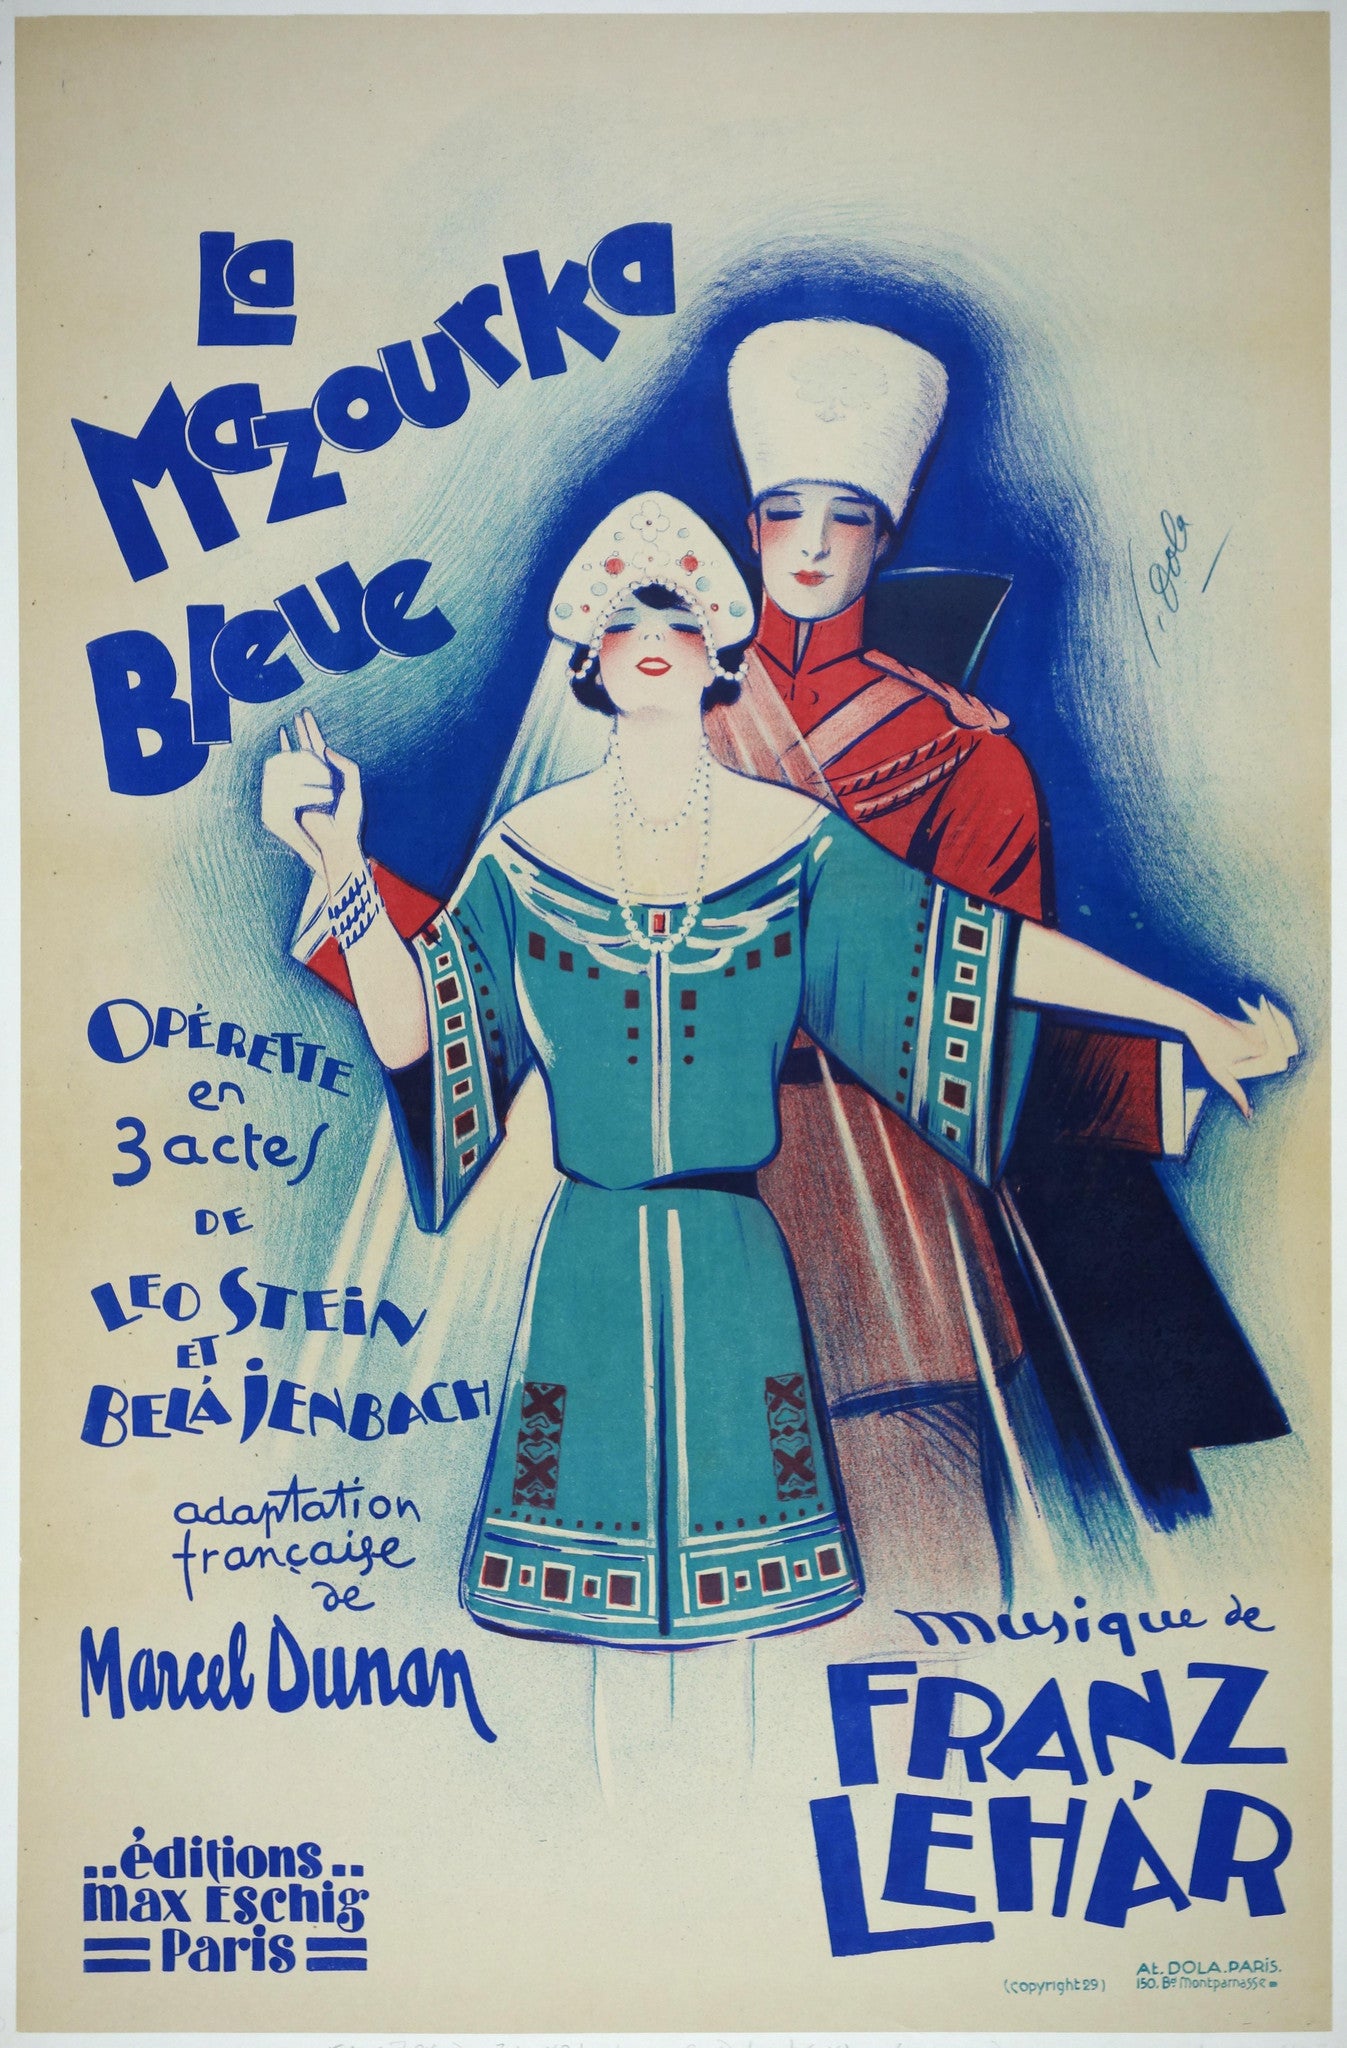 La Mazourka Bleue